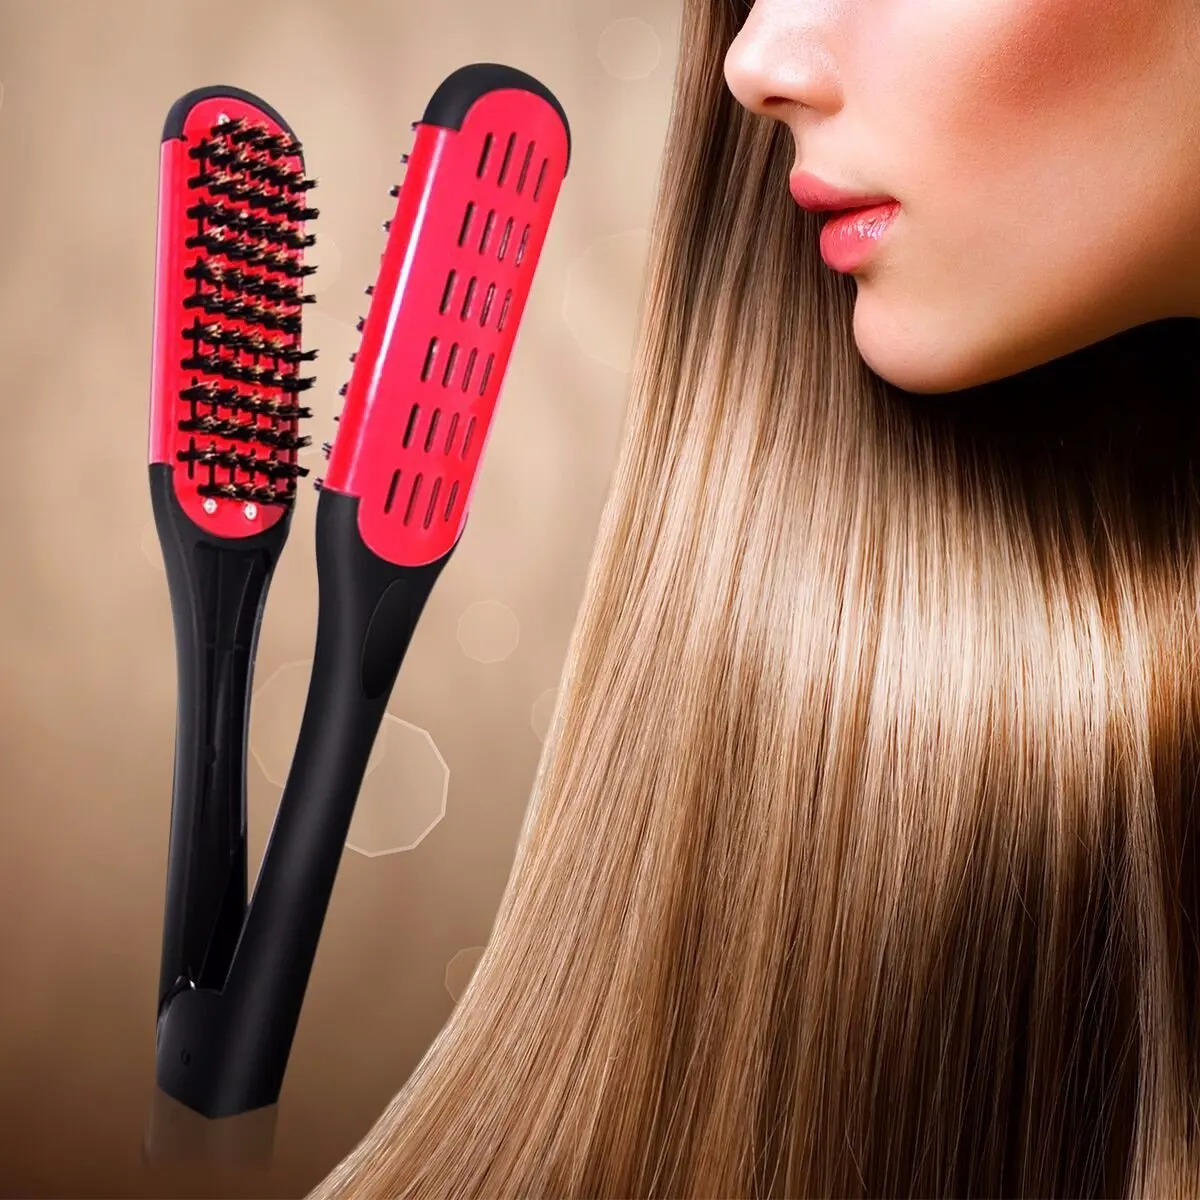 Как пользоваться расческой для выпрямления волос fast hair straightener